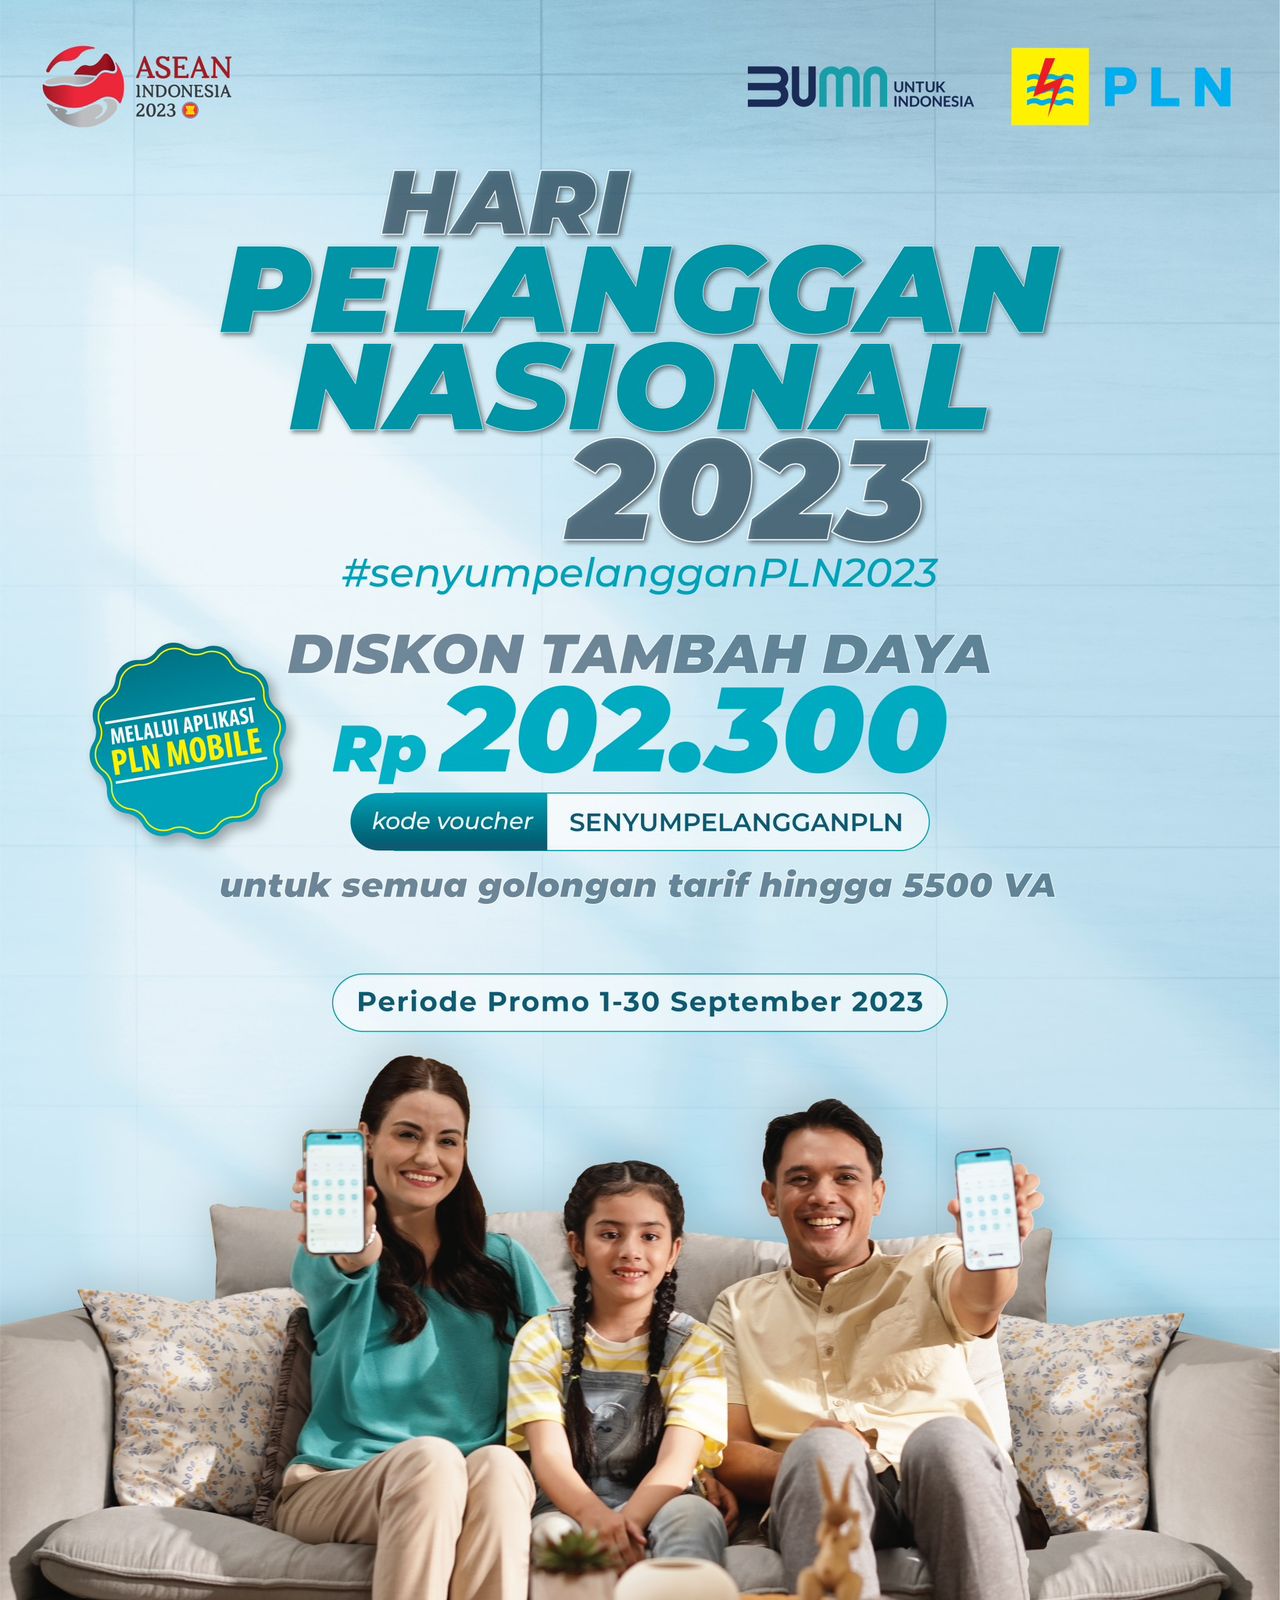 Promo Tambah Daya Hari Pelanggan Nasional 2023 sukses diikuti 4.948 Pelanggan PLN Riau & Kepri